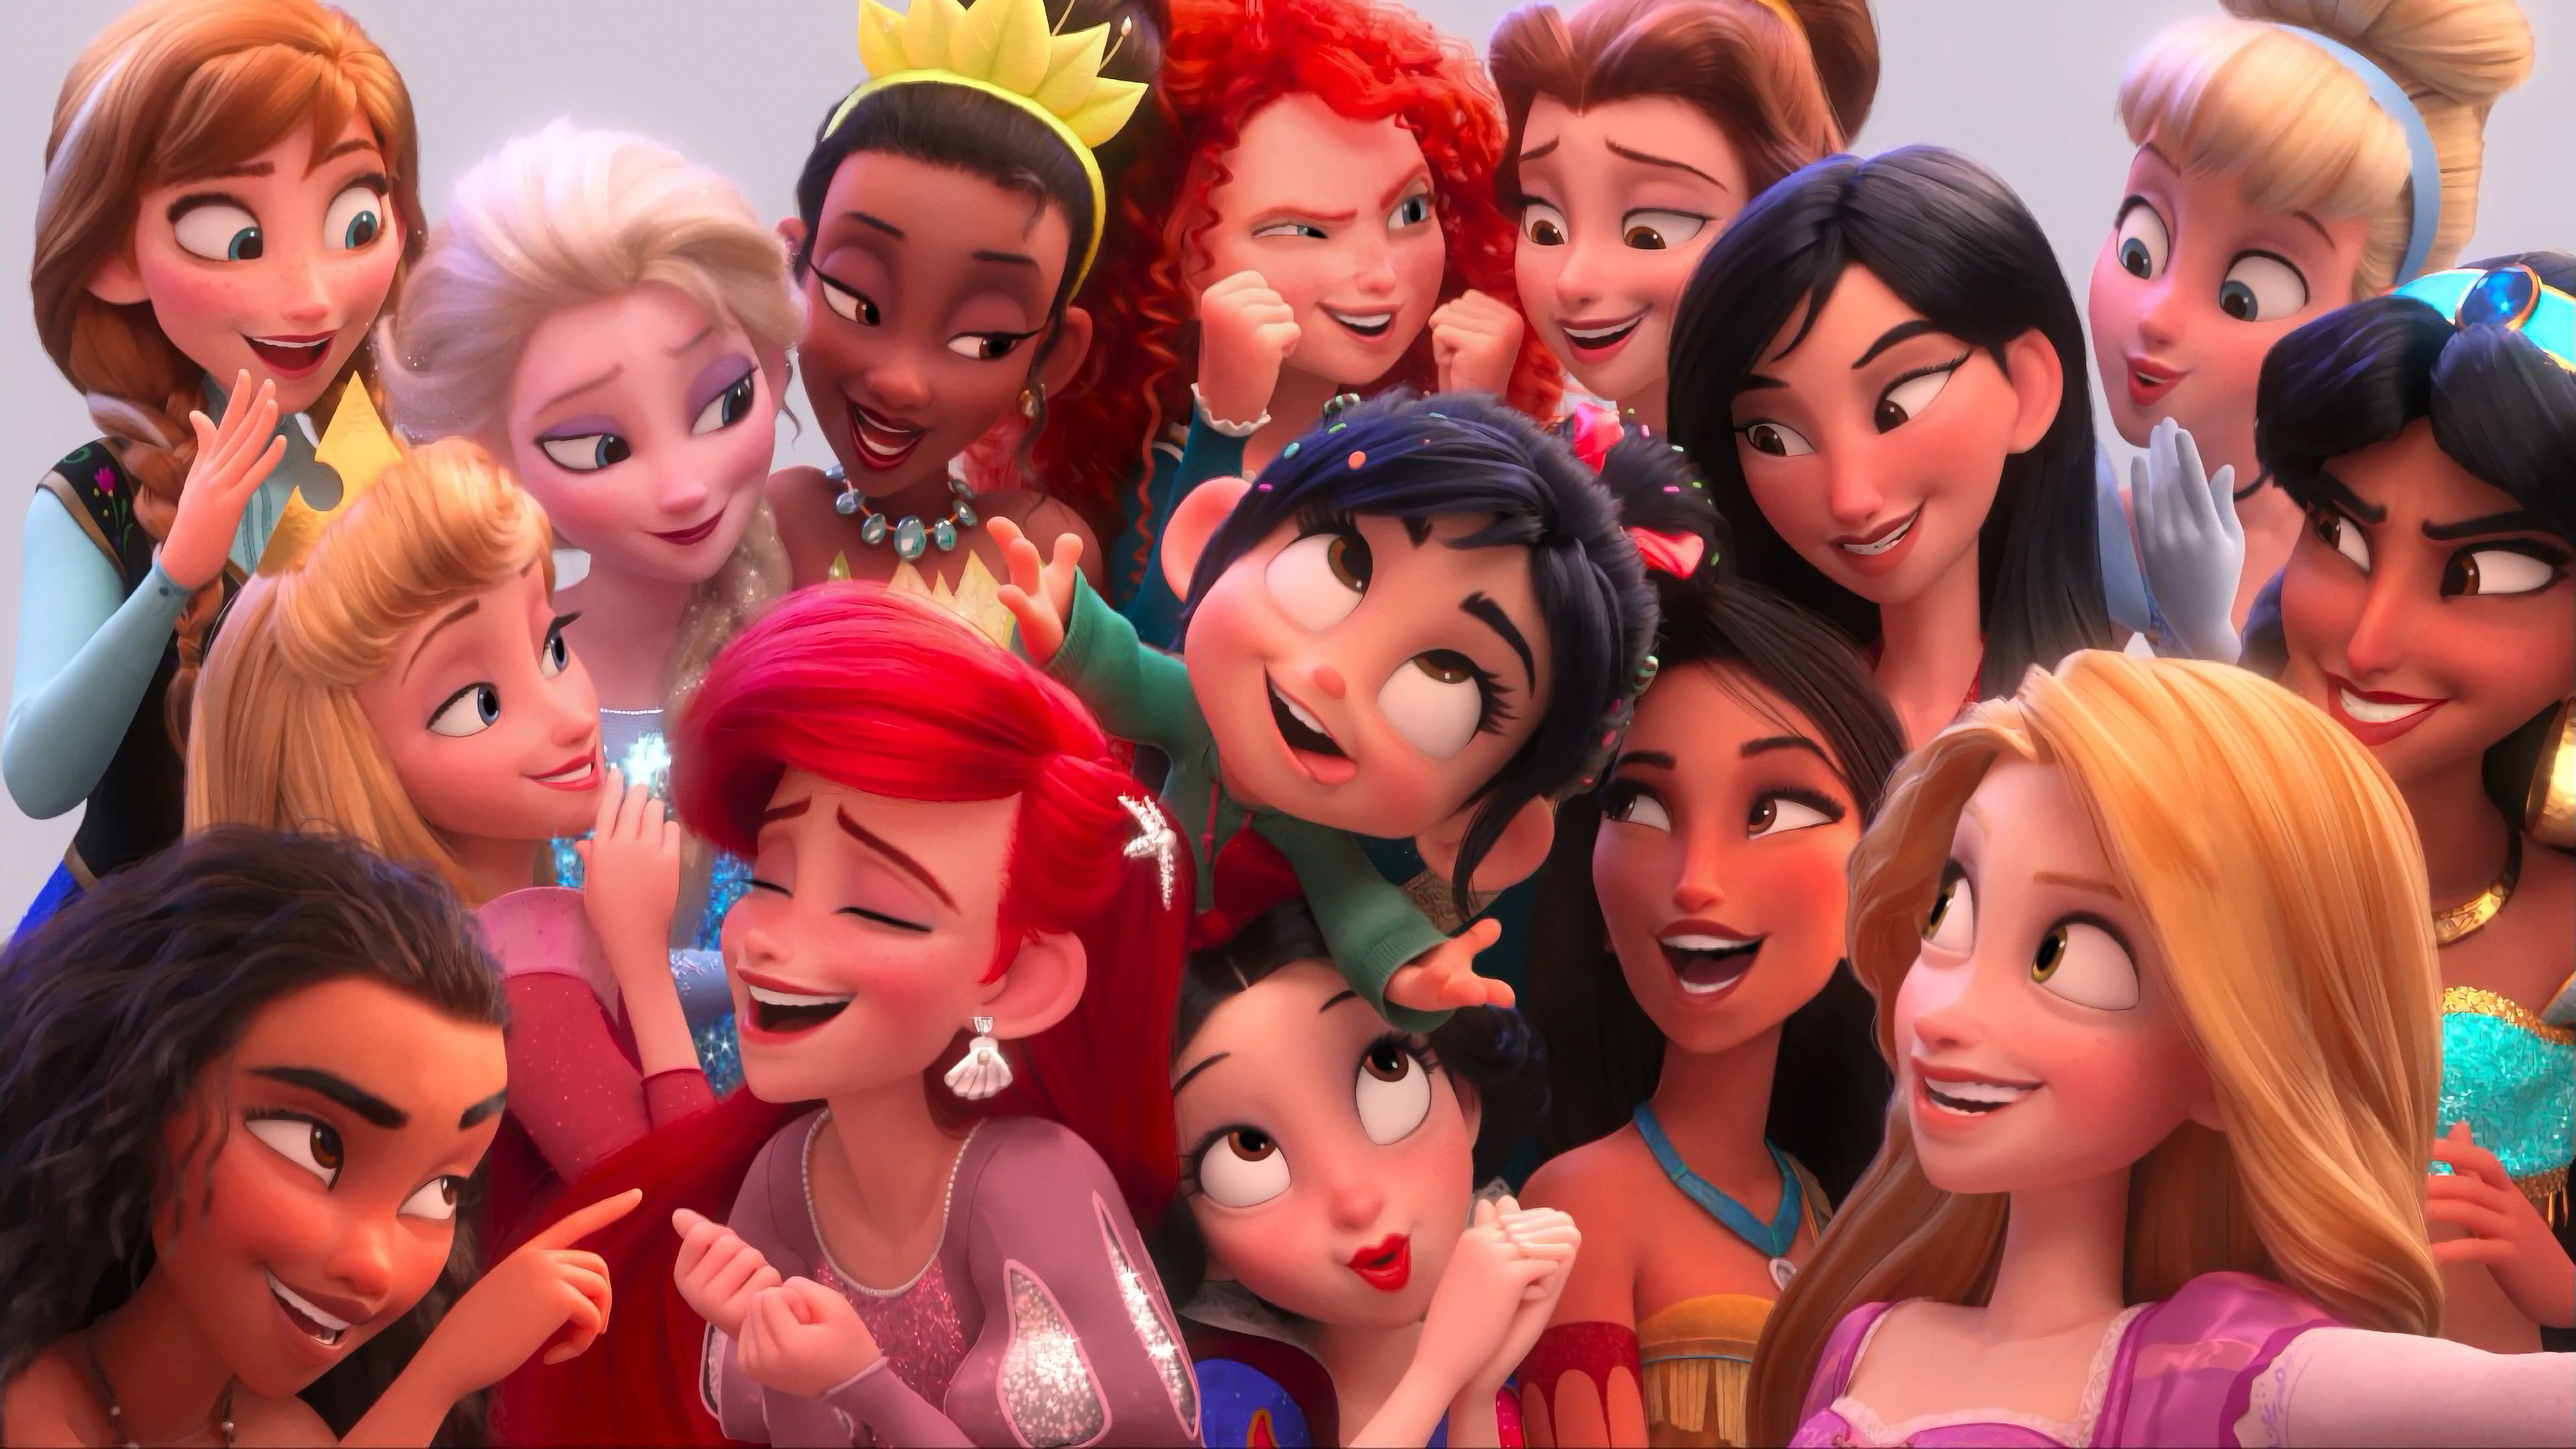 Disney Princess Wreck It Ralph 2 , HD Wallpaper & Backgrounds